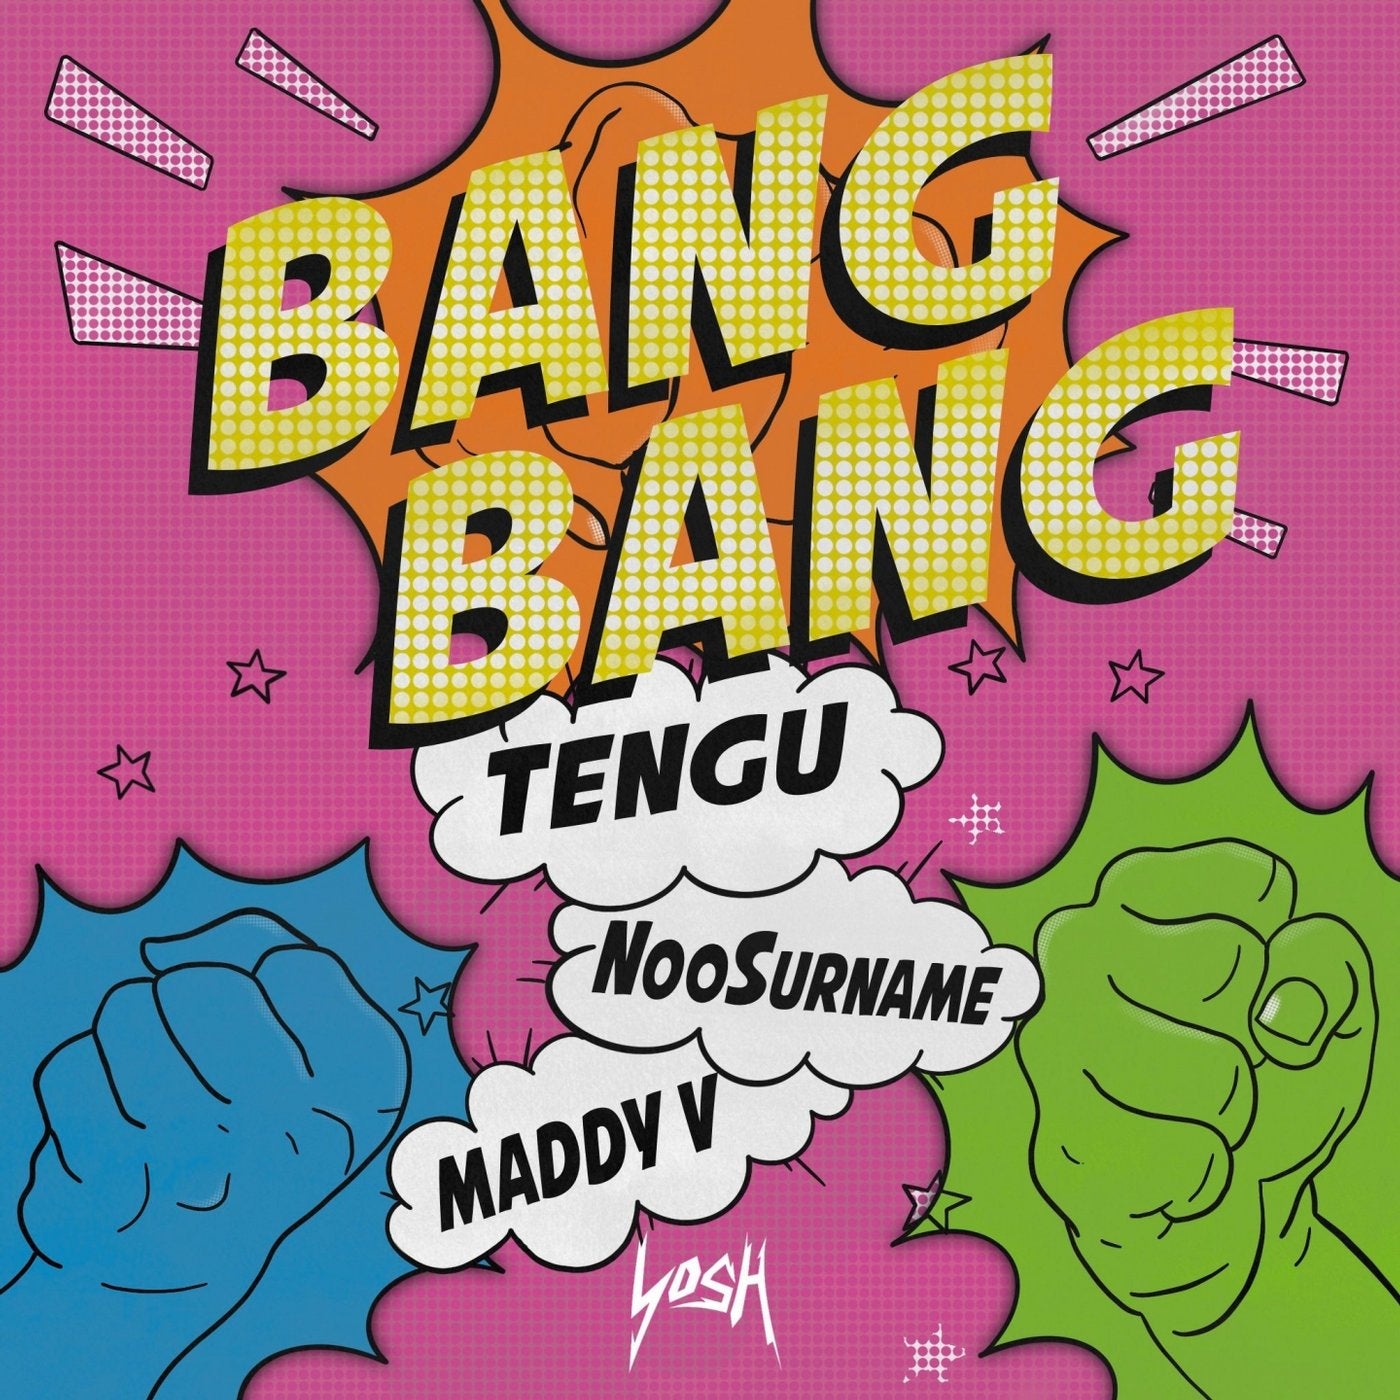 Bang bang 11. Ban ban. Bang! Альбомы. Bang Bang текст. V Bangs.